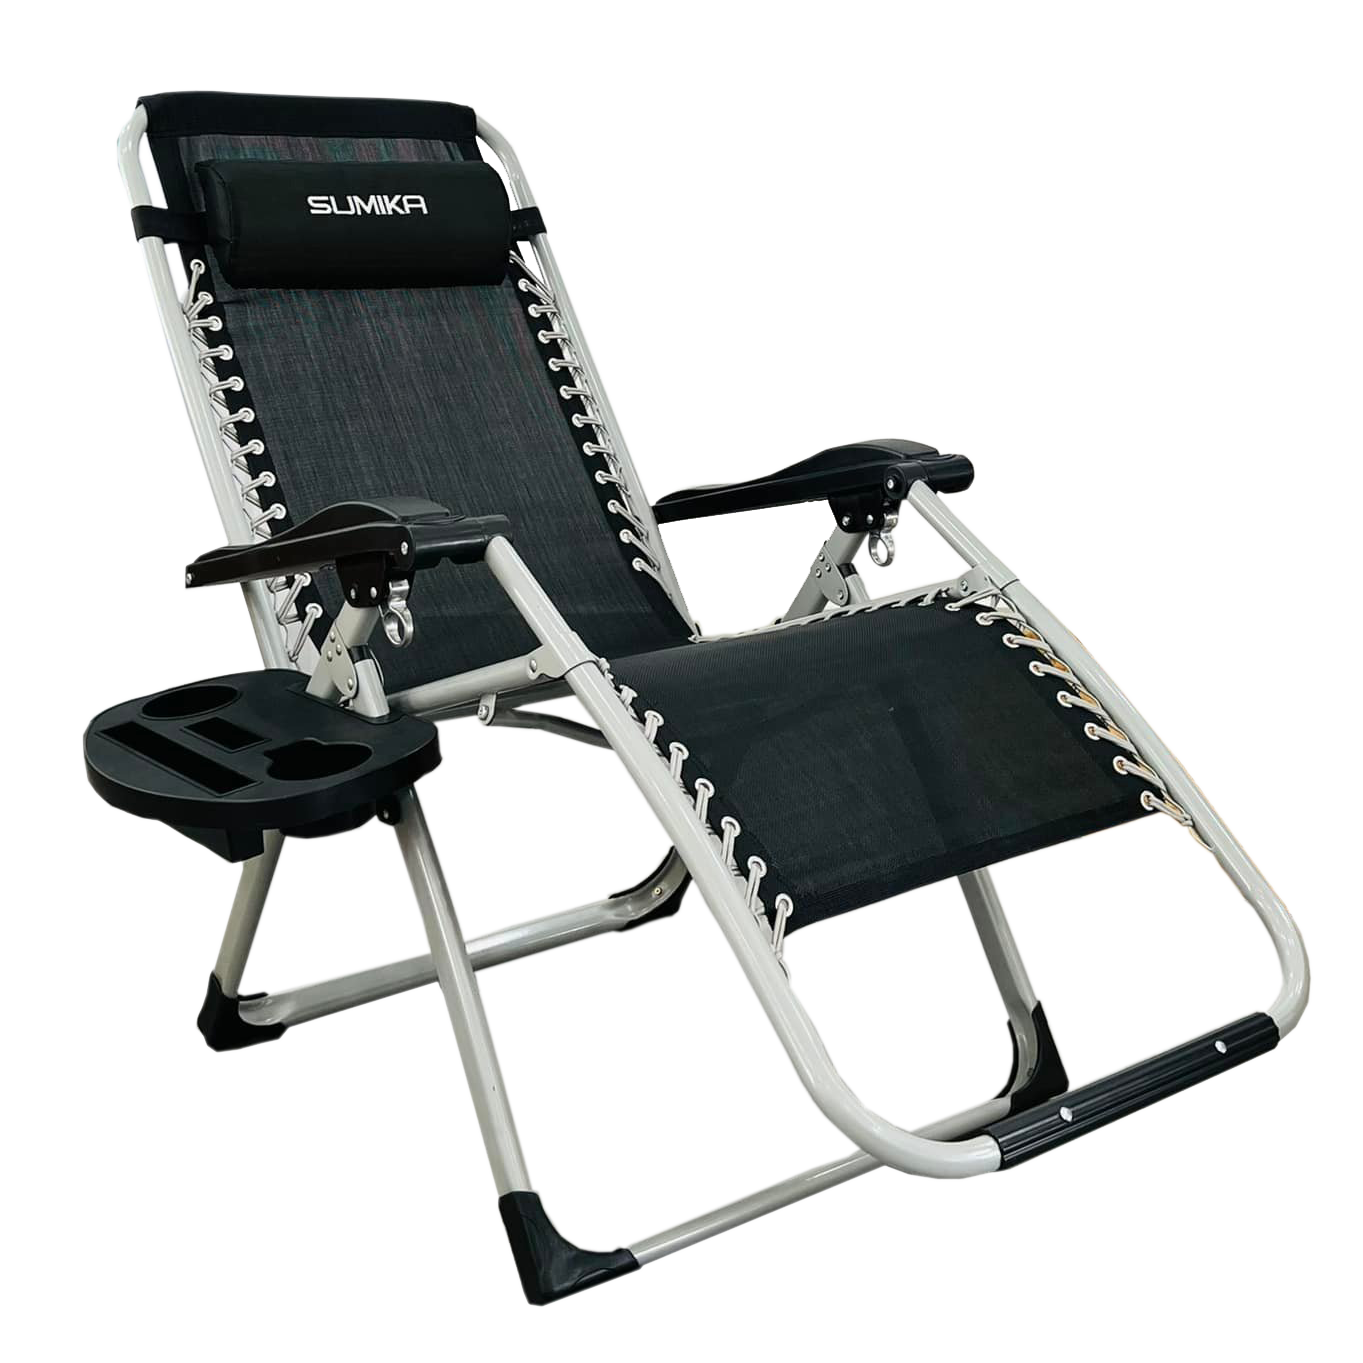 Relaxing folding chair